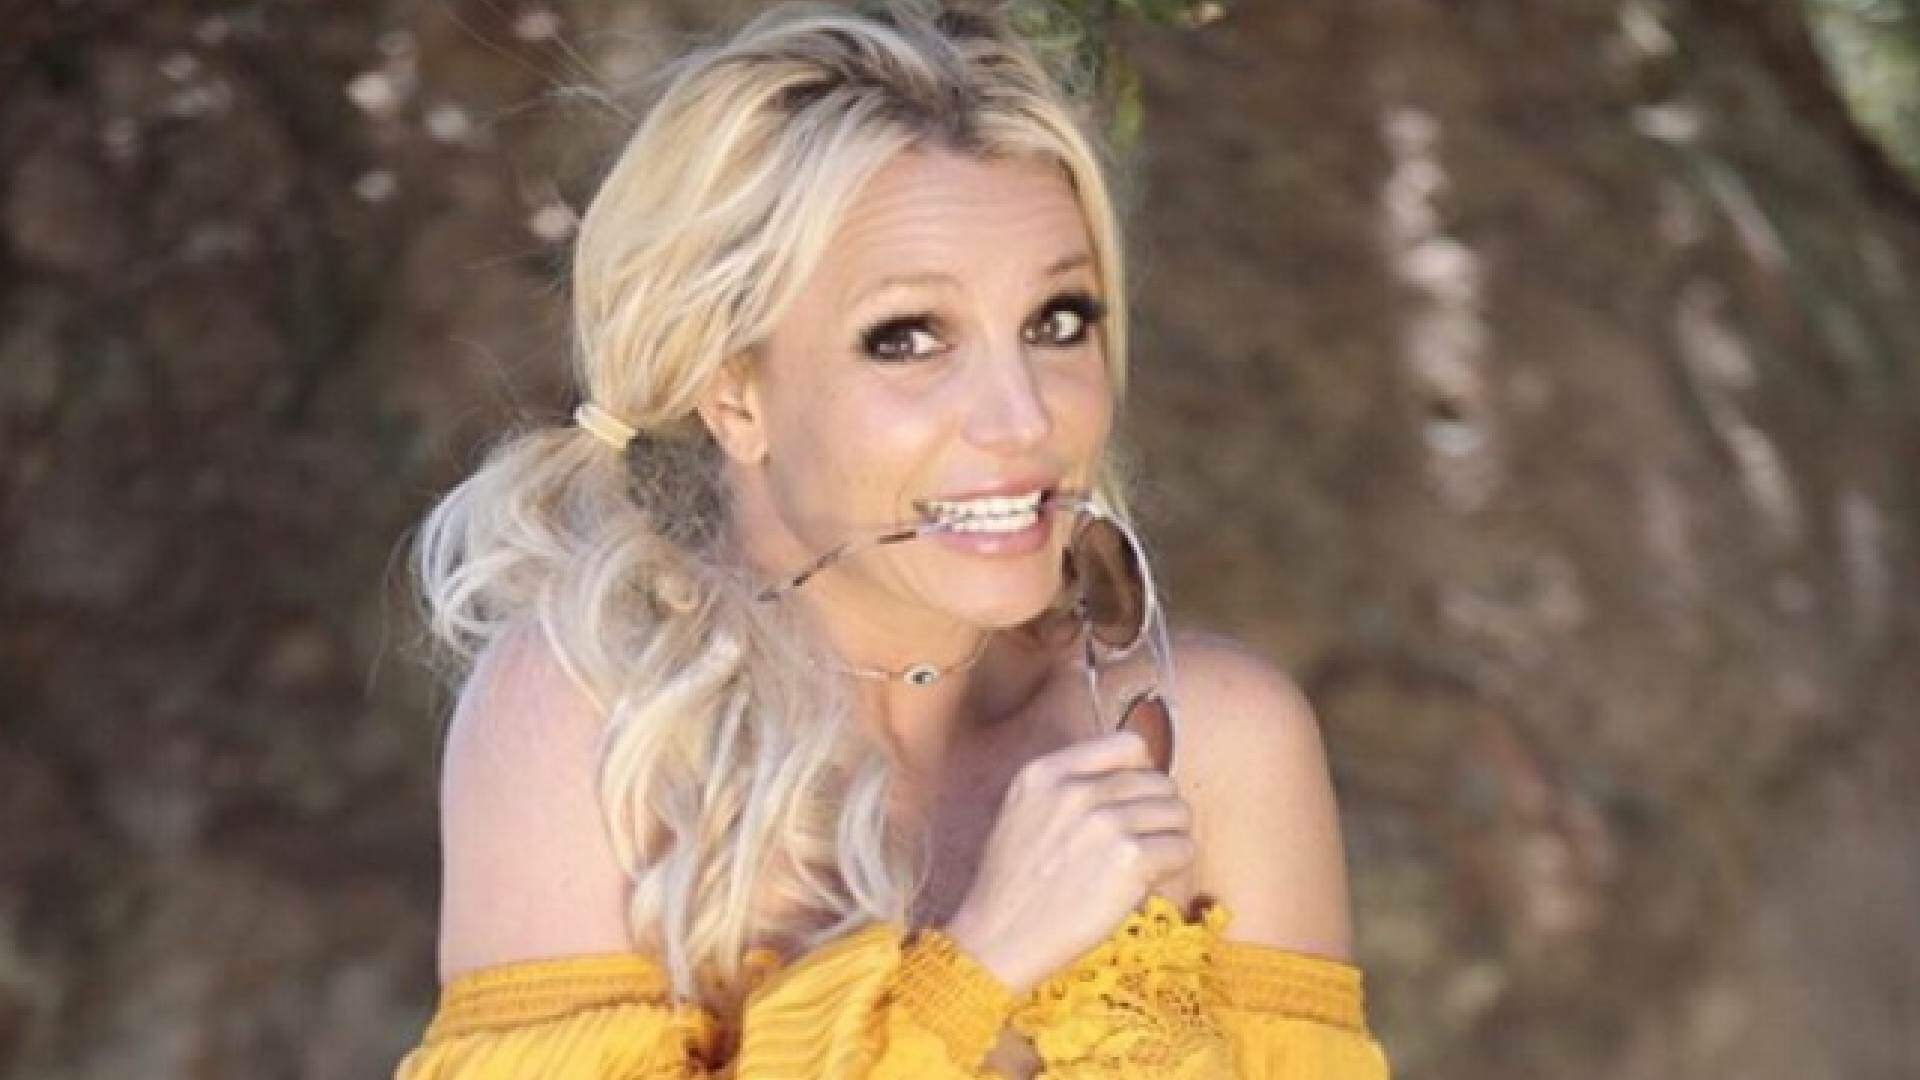 Casamento à vista? o que se sabe sobre o casório secreto de Britney Spears - Metropolitana FM